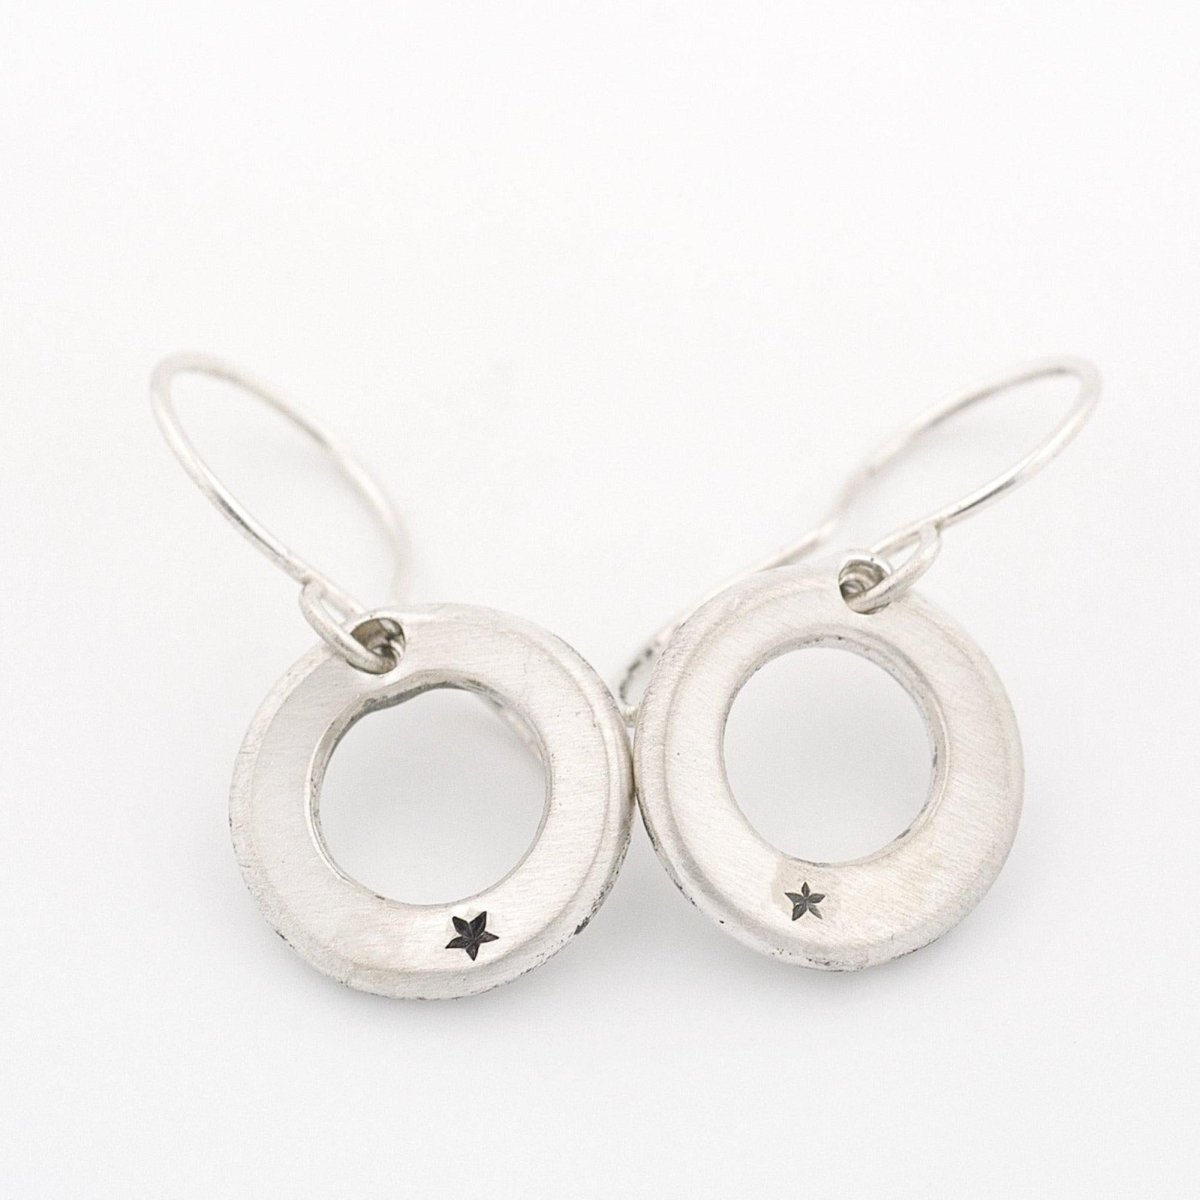 Circling Star Earrings - John Paul Designs